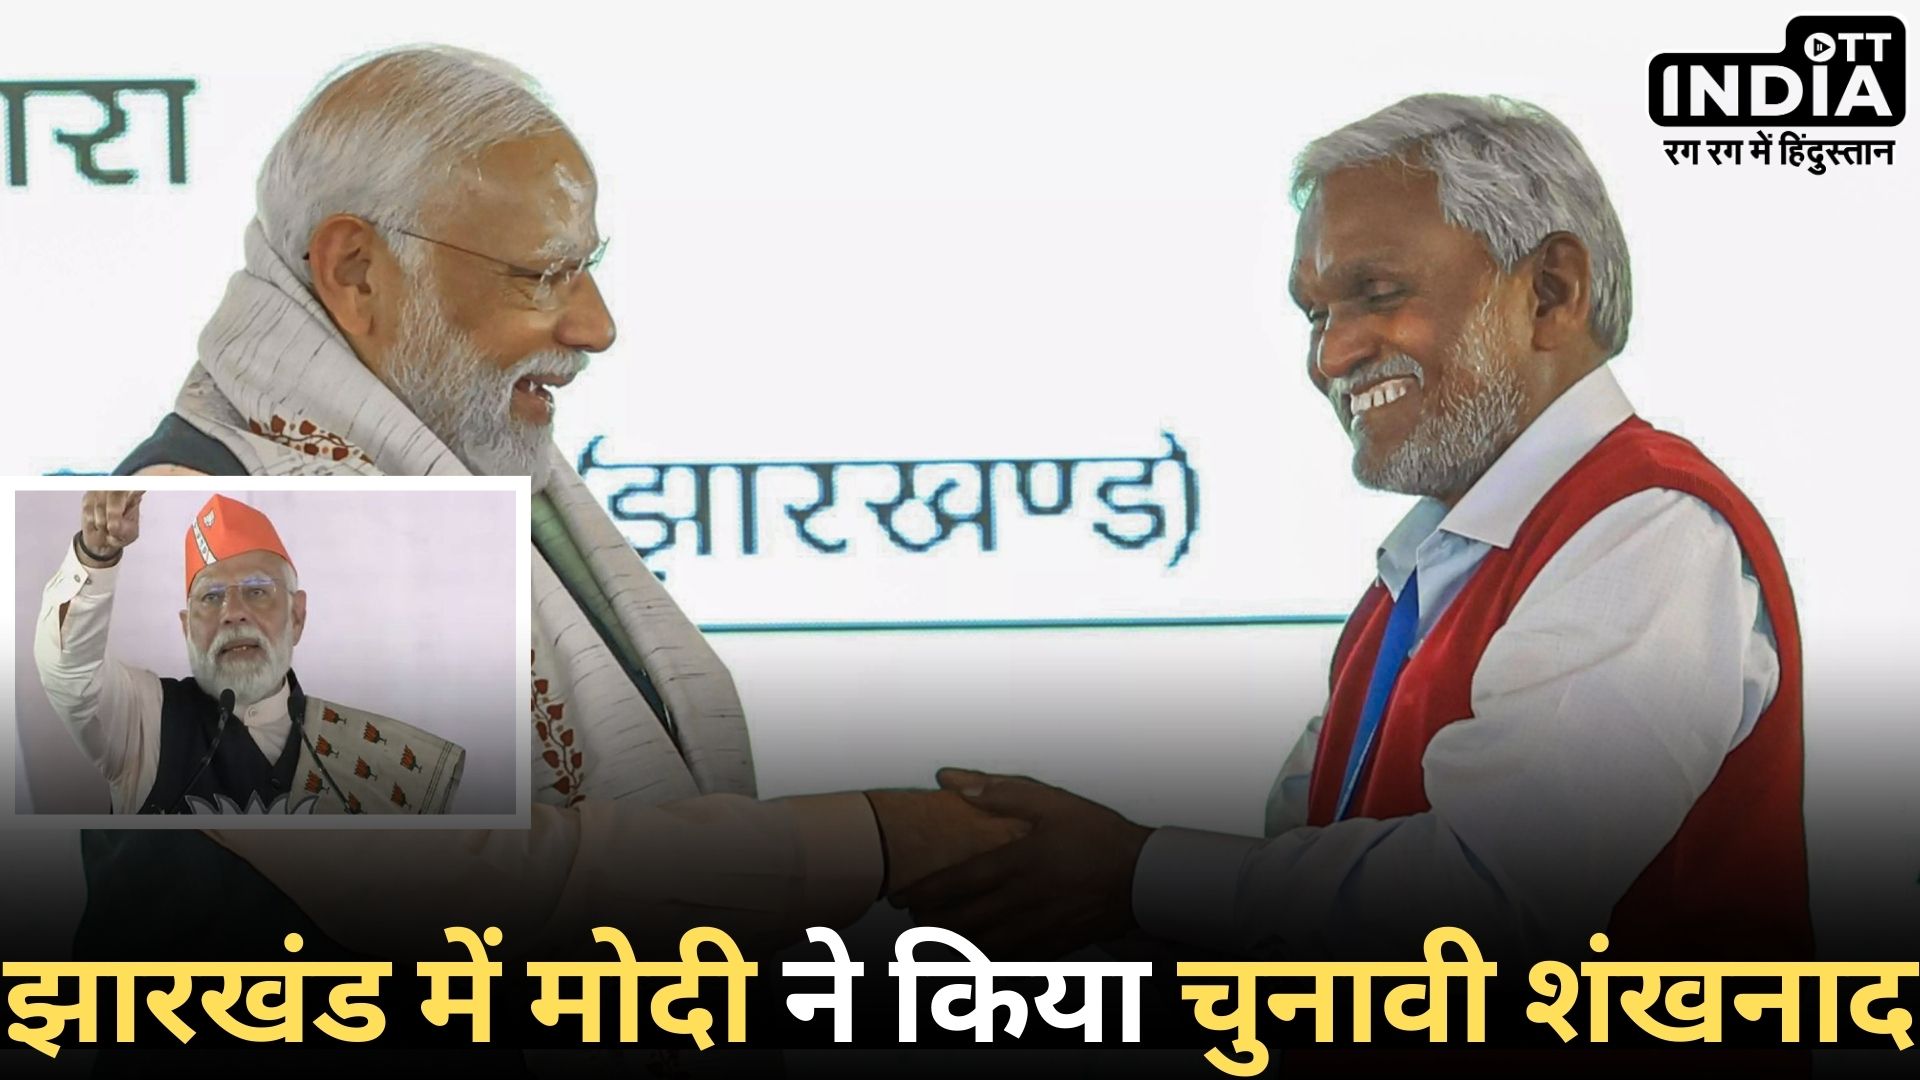 Modi In Jharkhand: पीएम मोदी ने सिंदरी हर्ल प्लांट का उद्घाटन किया, 35,700 करोड़ की परियोजनाएँ, मुख्यमंत्री ने प्रधानमंत्री को दिया धन्यवाद…